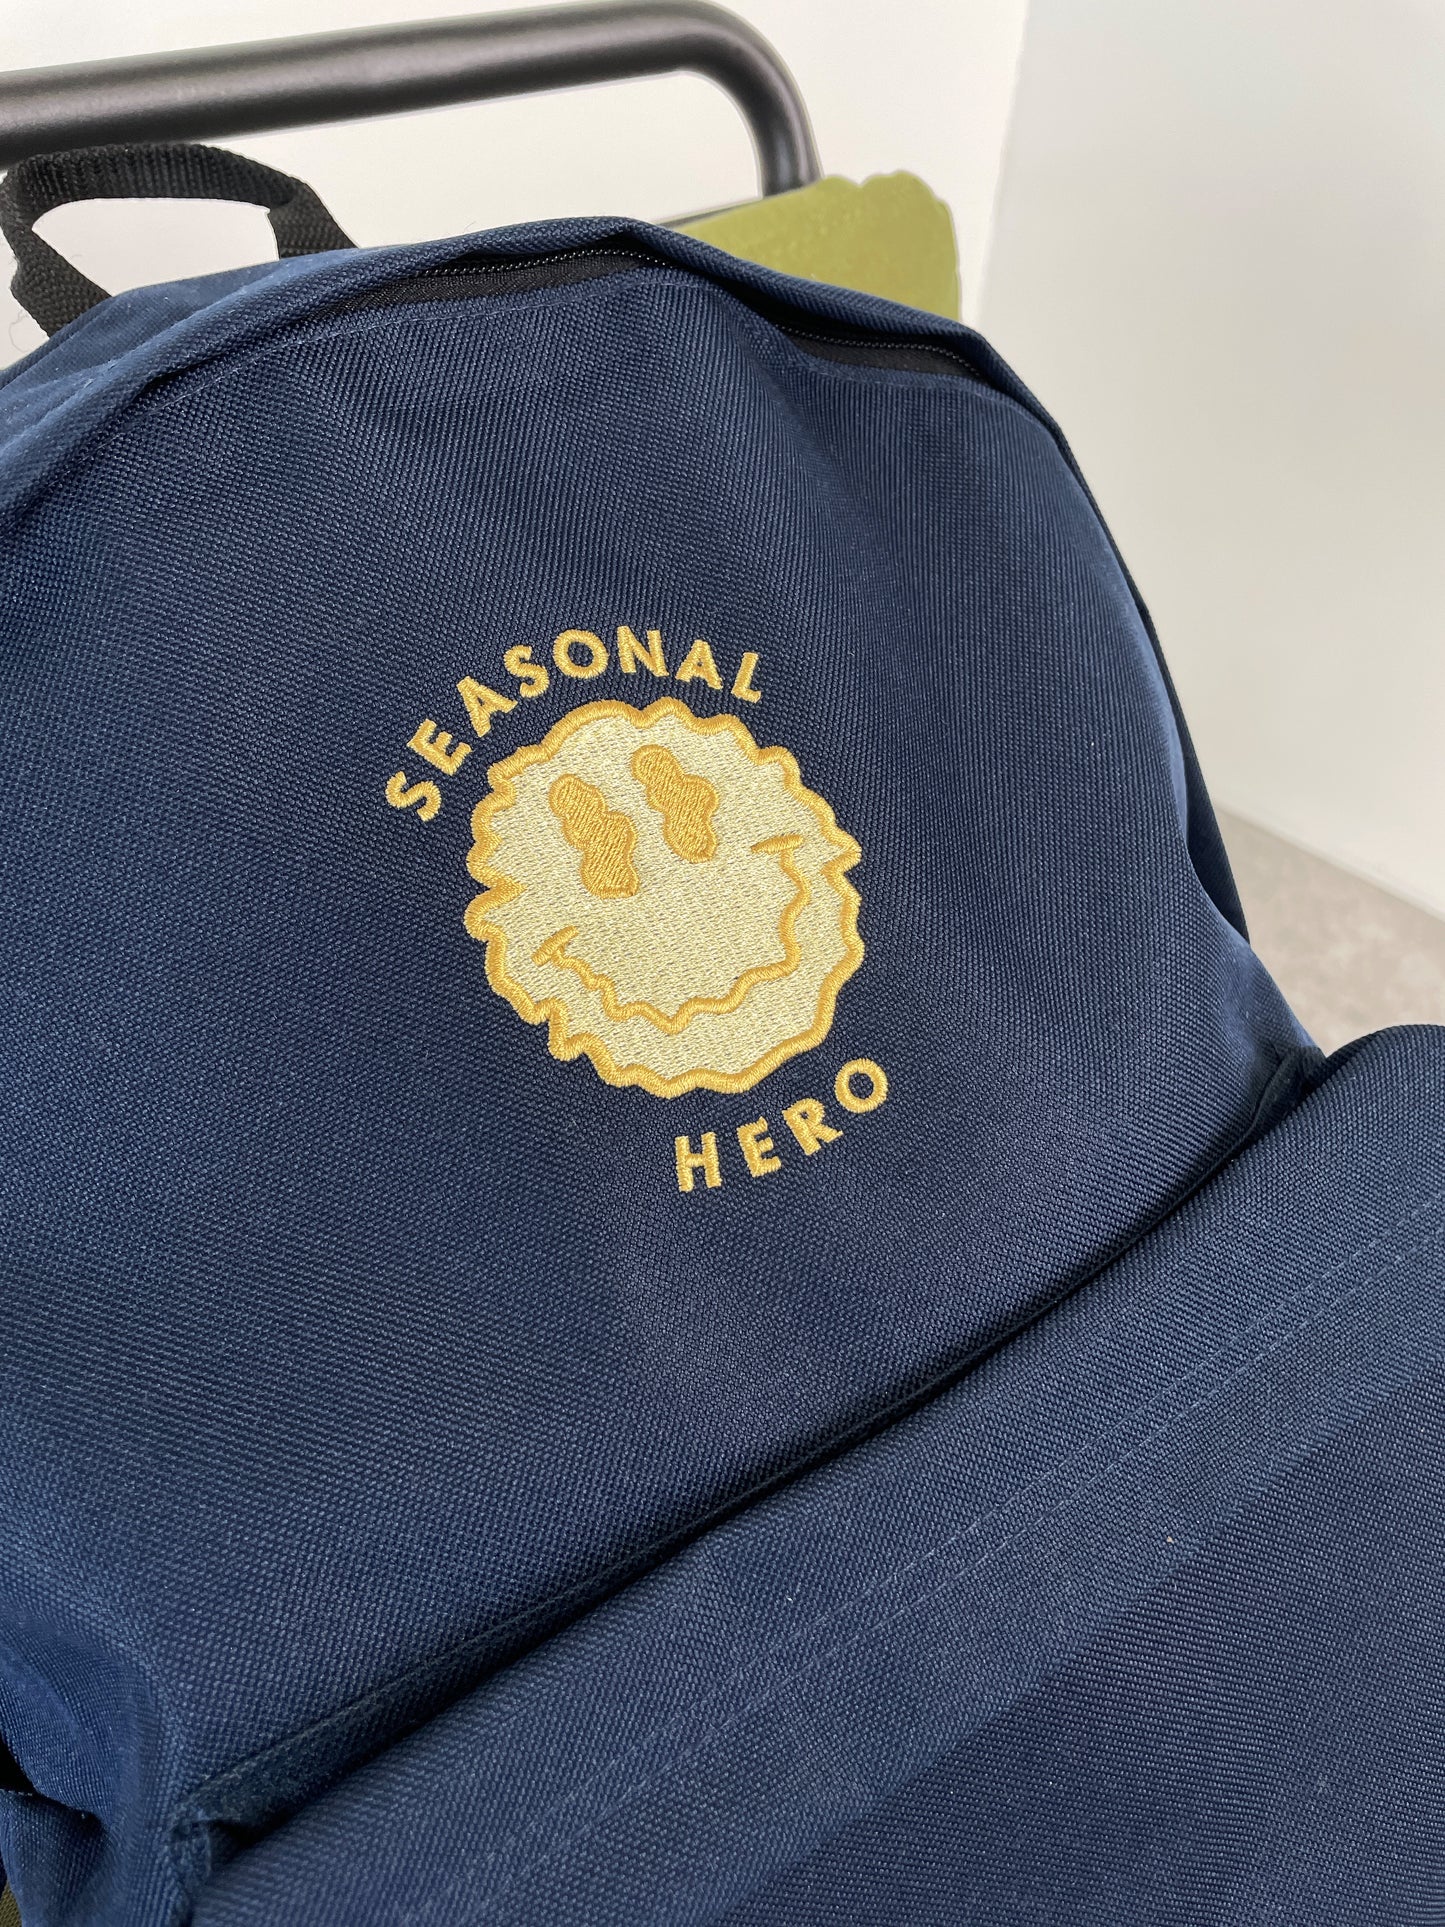 Seasonal Hero 'Trippy Smiler' Embroidered Backpack - Navy